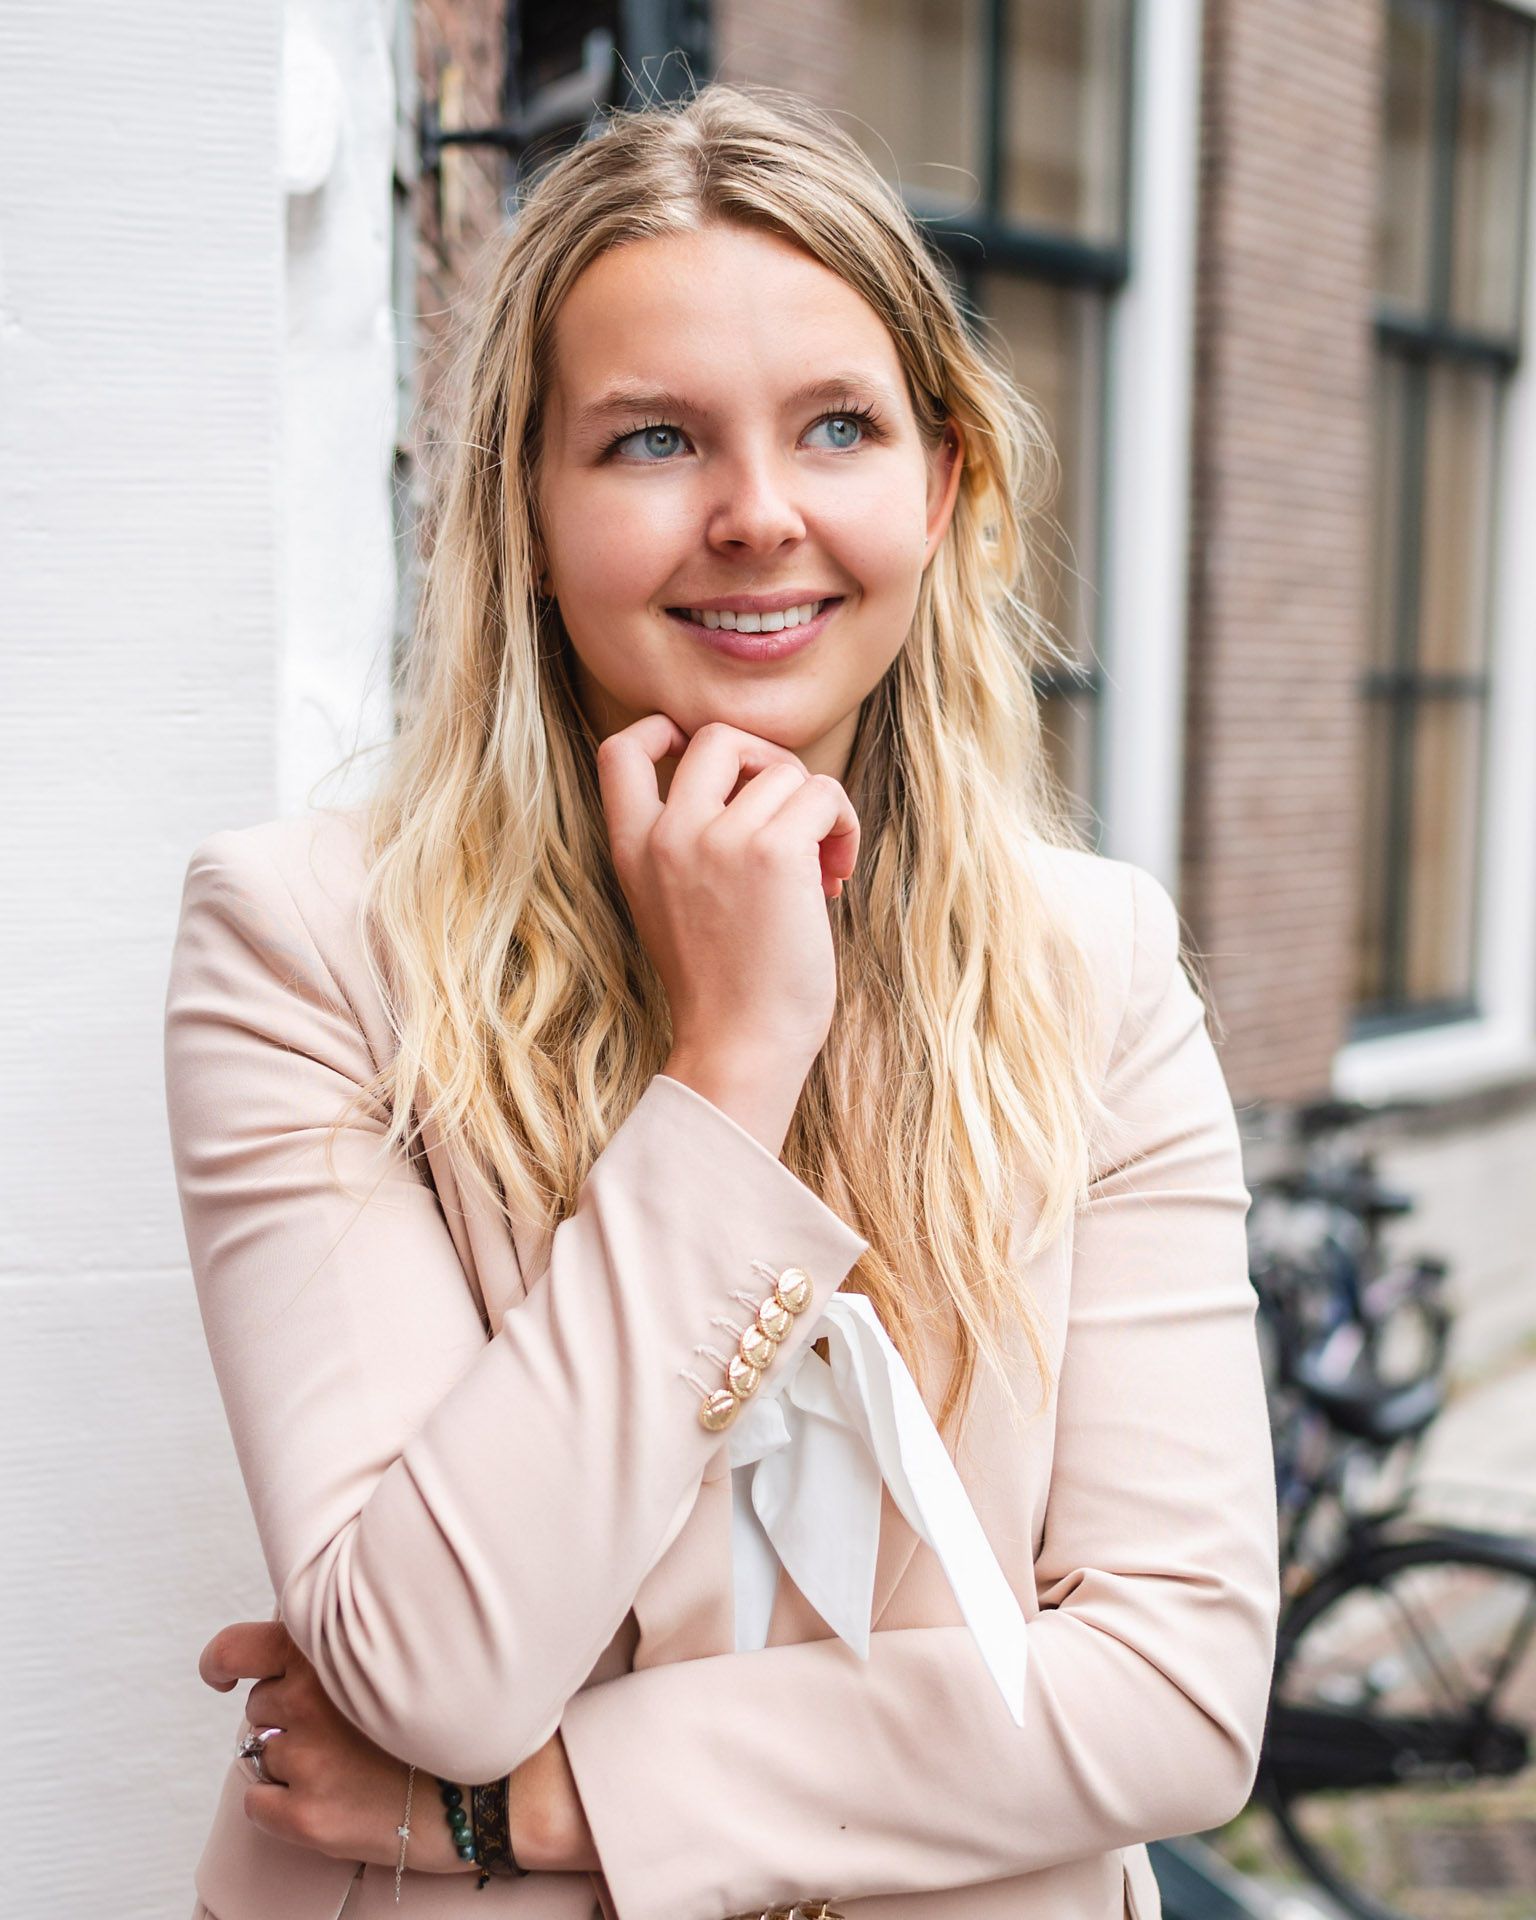 Emma Verschure, Belastingadviseur voor Excellent choice 'boekhouding is een feestje'